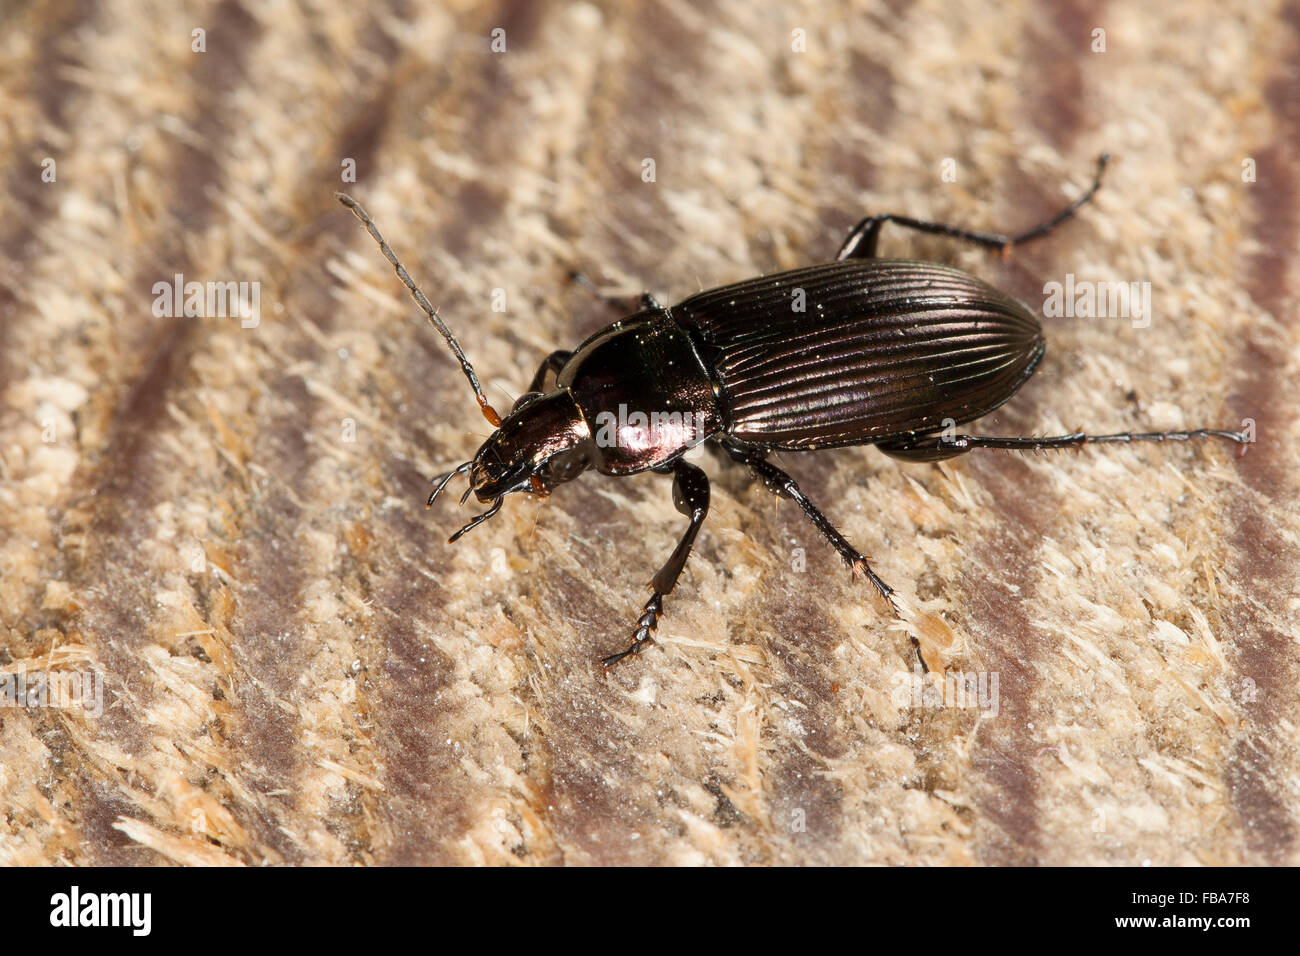 Ground beetle, Kupferfarbener Buntgrabläufer, Grabläufer, Schulterläufer, Buntläufer, Poecilus cupreus, Pterostichus cupreus Stock Photo